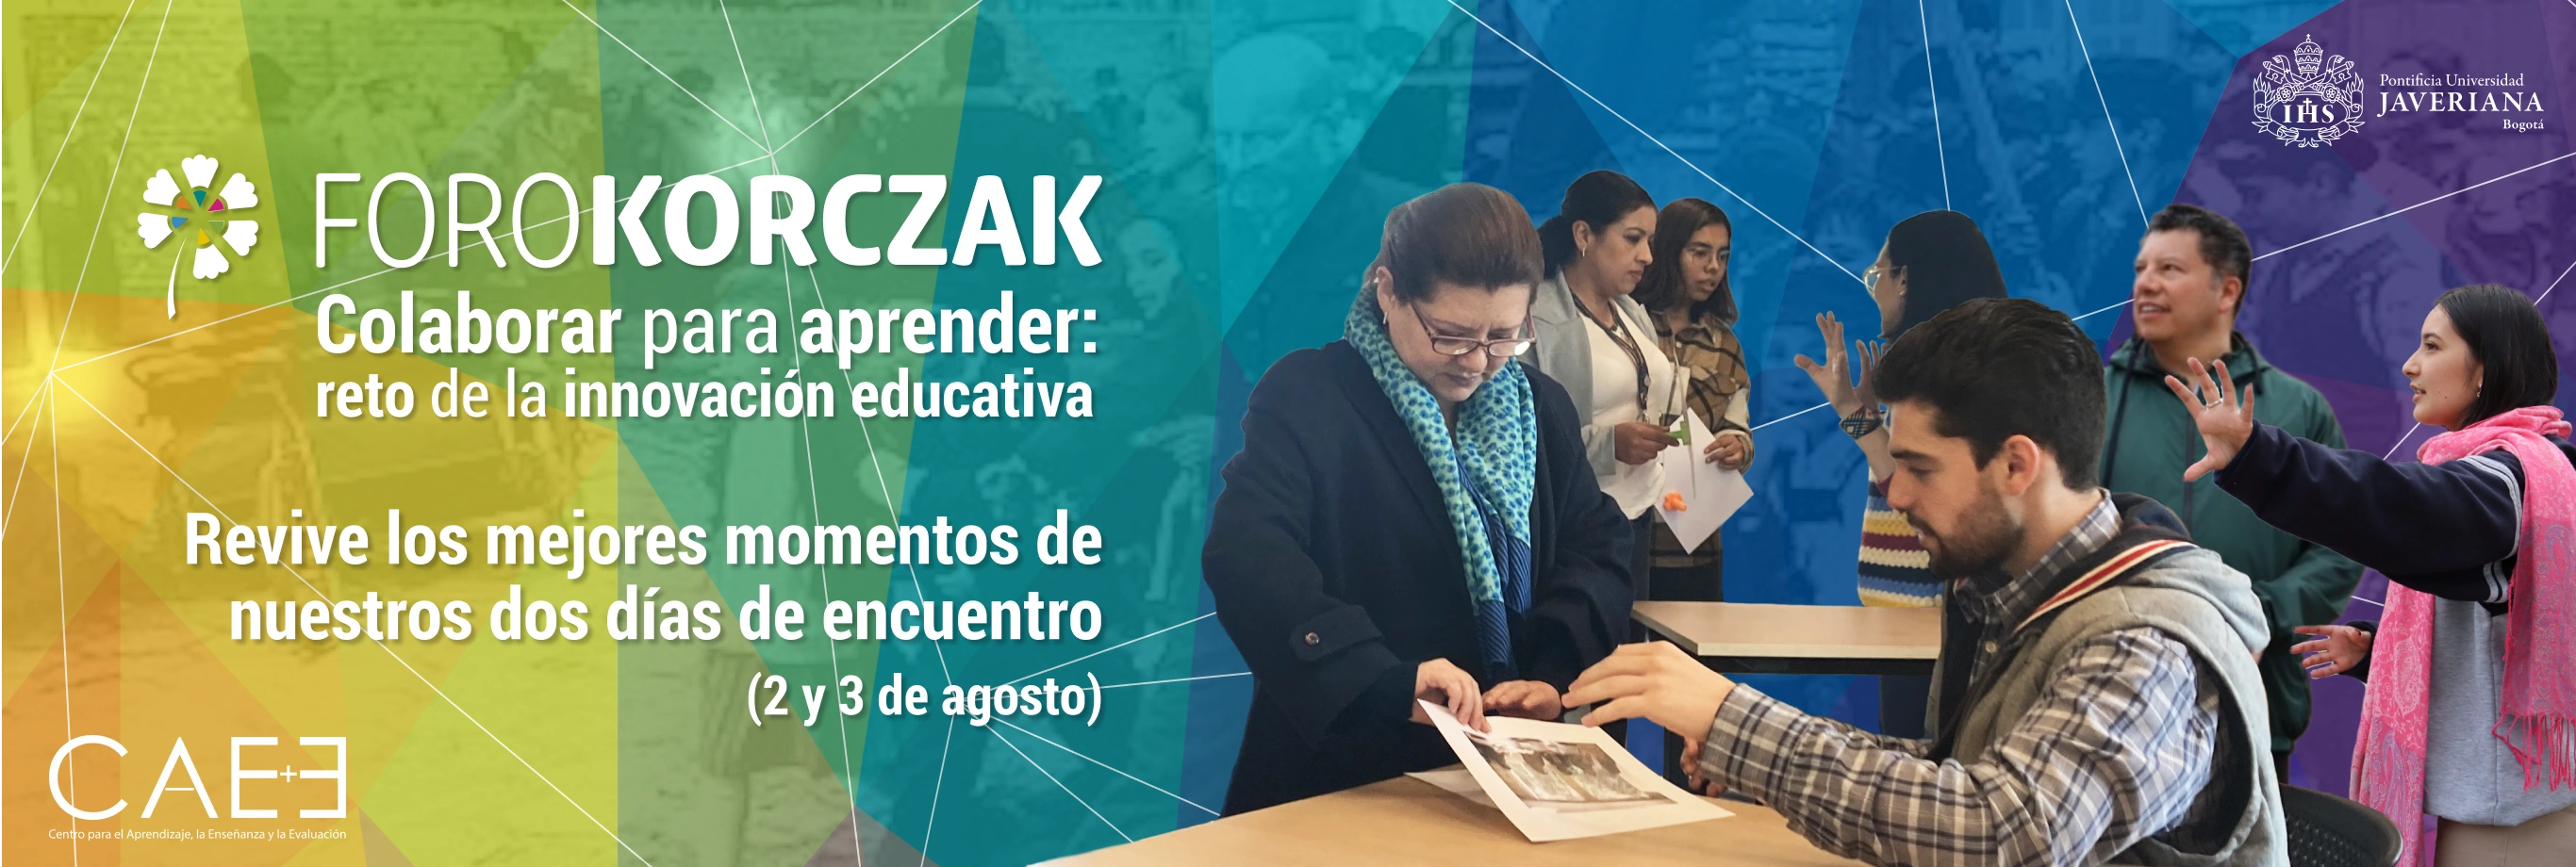 Foro Korczak: VIII Foro de Innovación Educativa